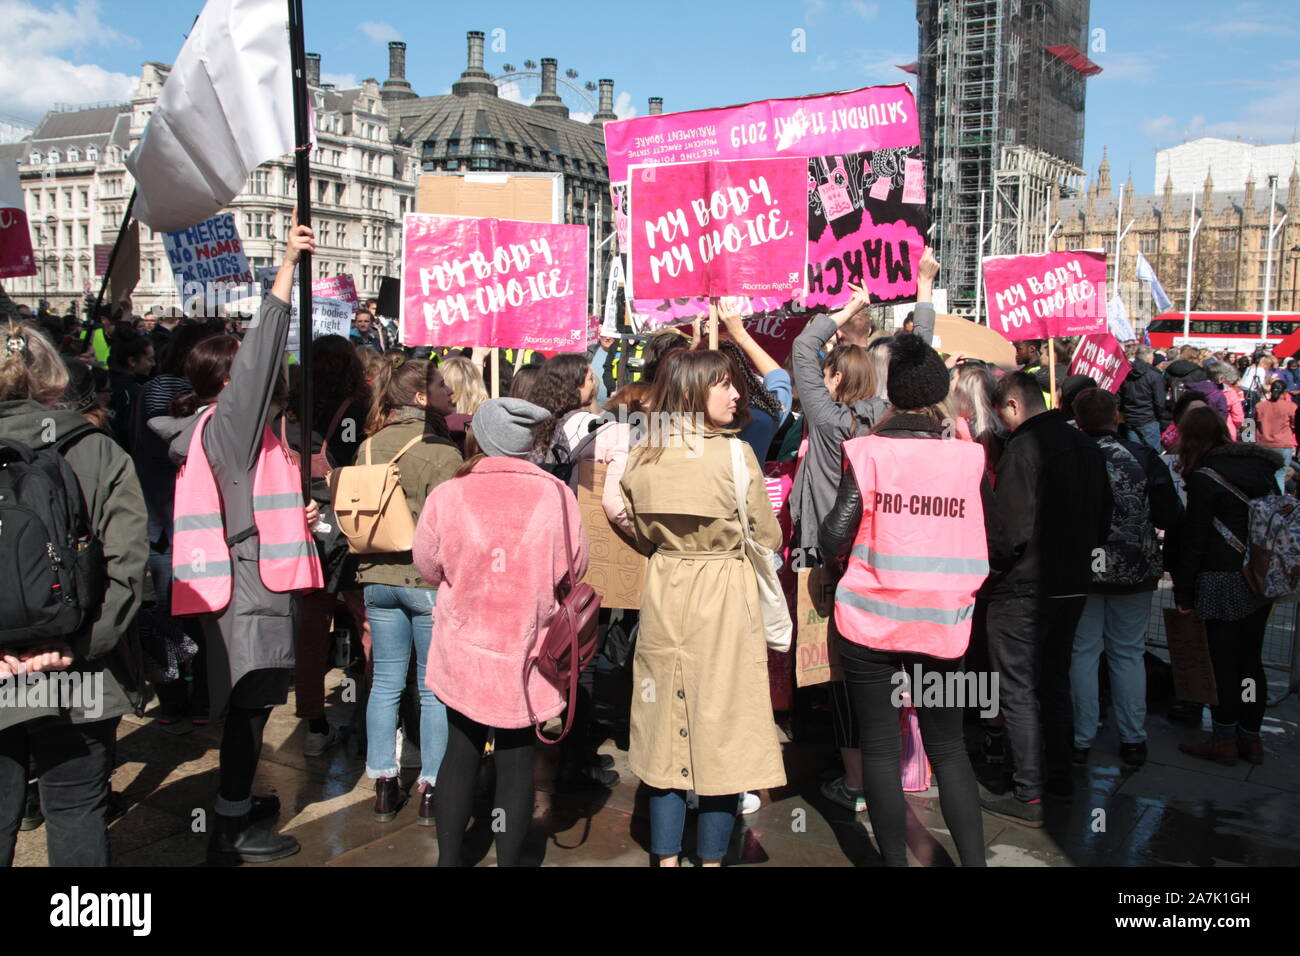 Pro choix avortement militantes féministes à la vie pro vie pour Mars UK, la place du Parlement, Londres, Angleterre Banque D'Images